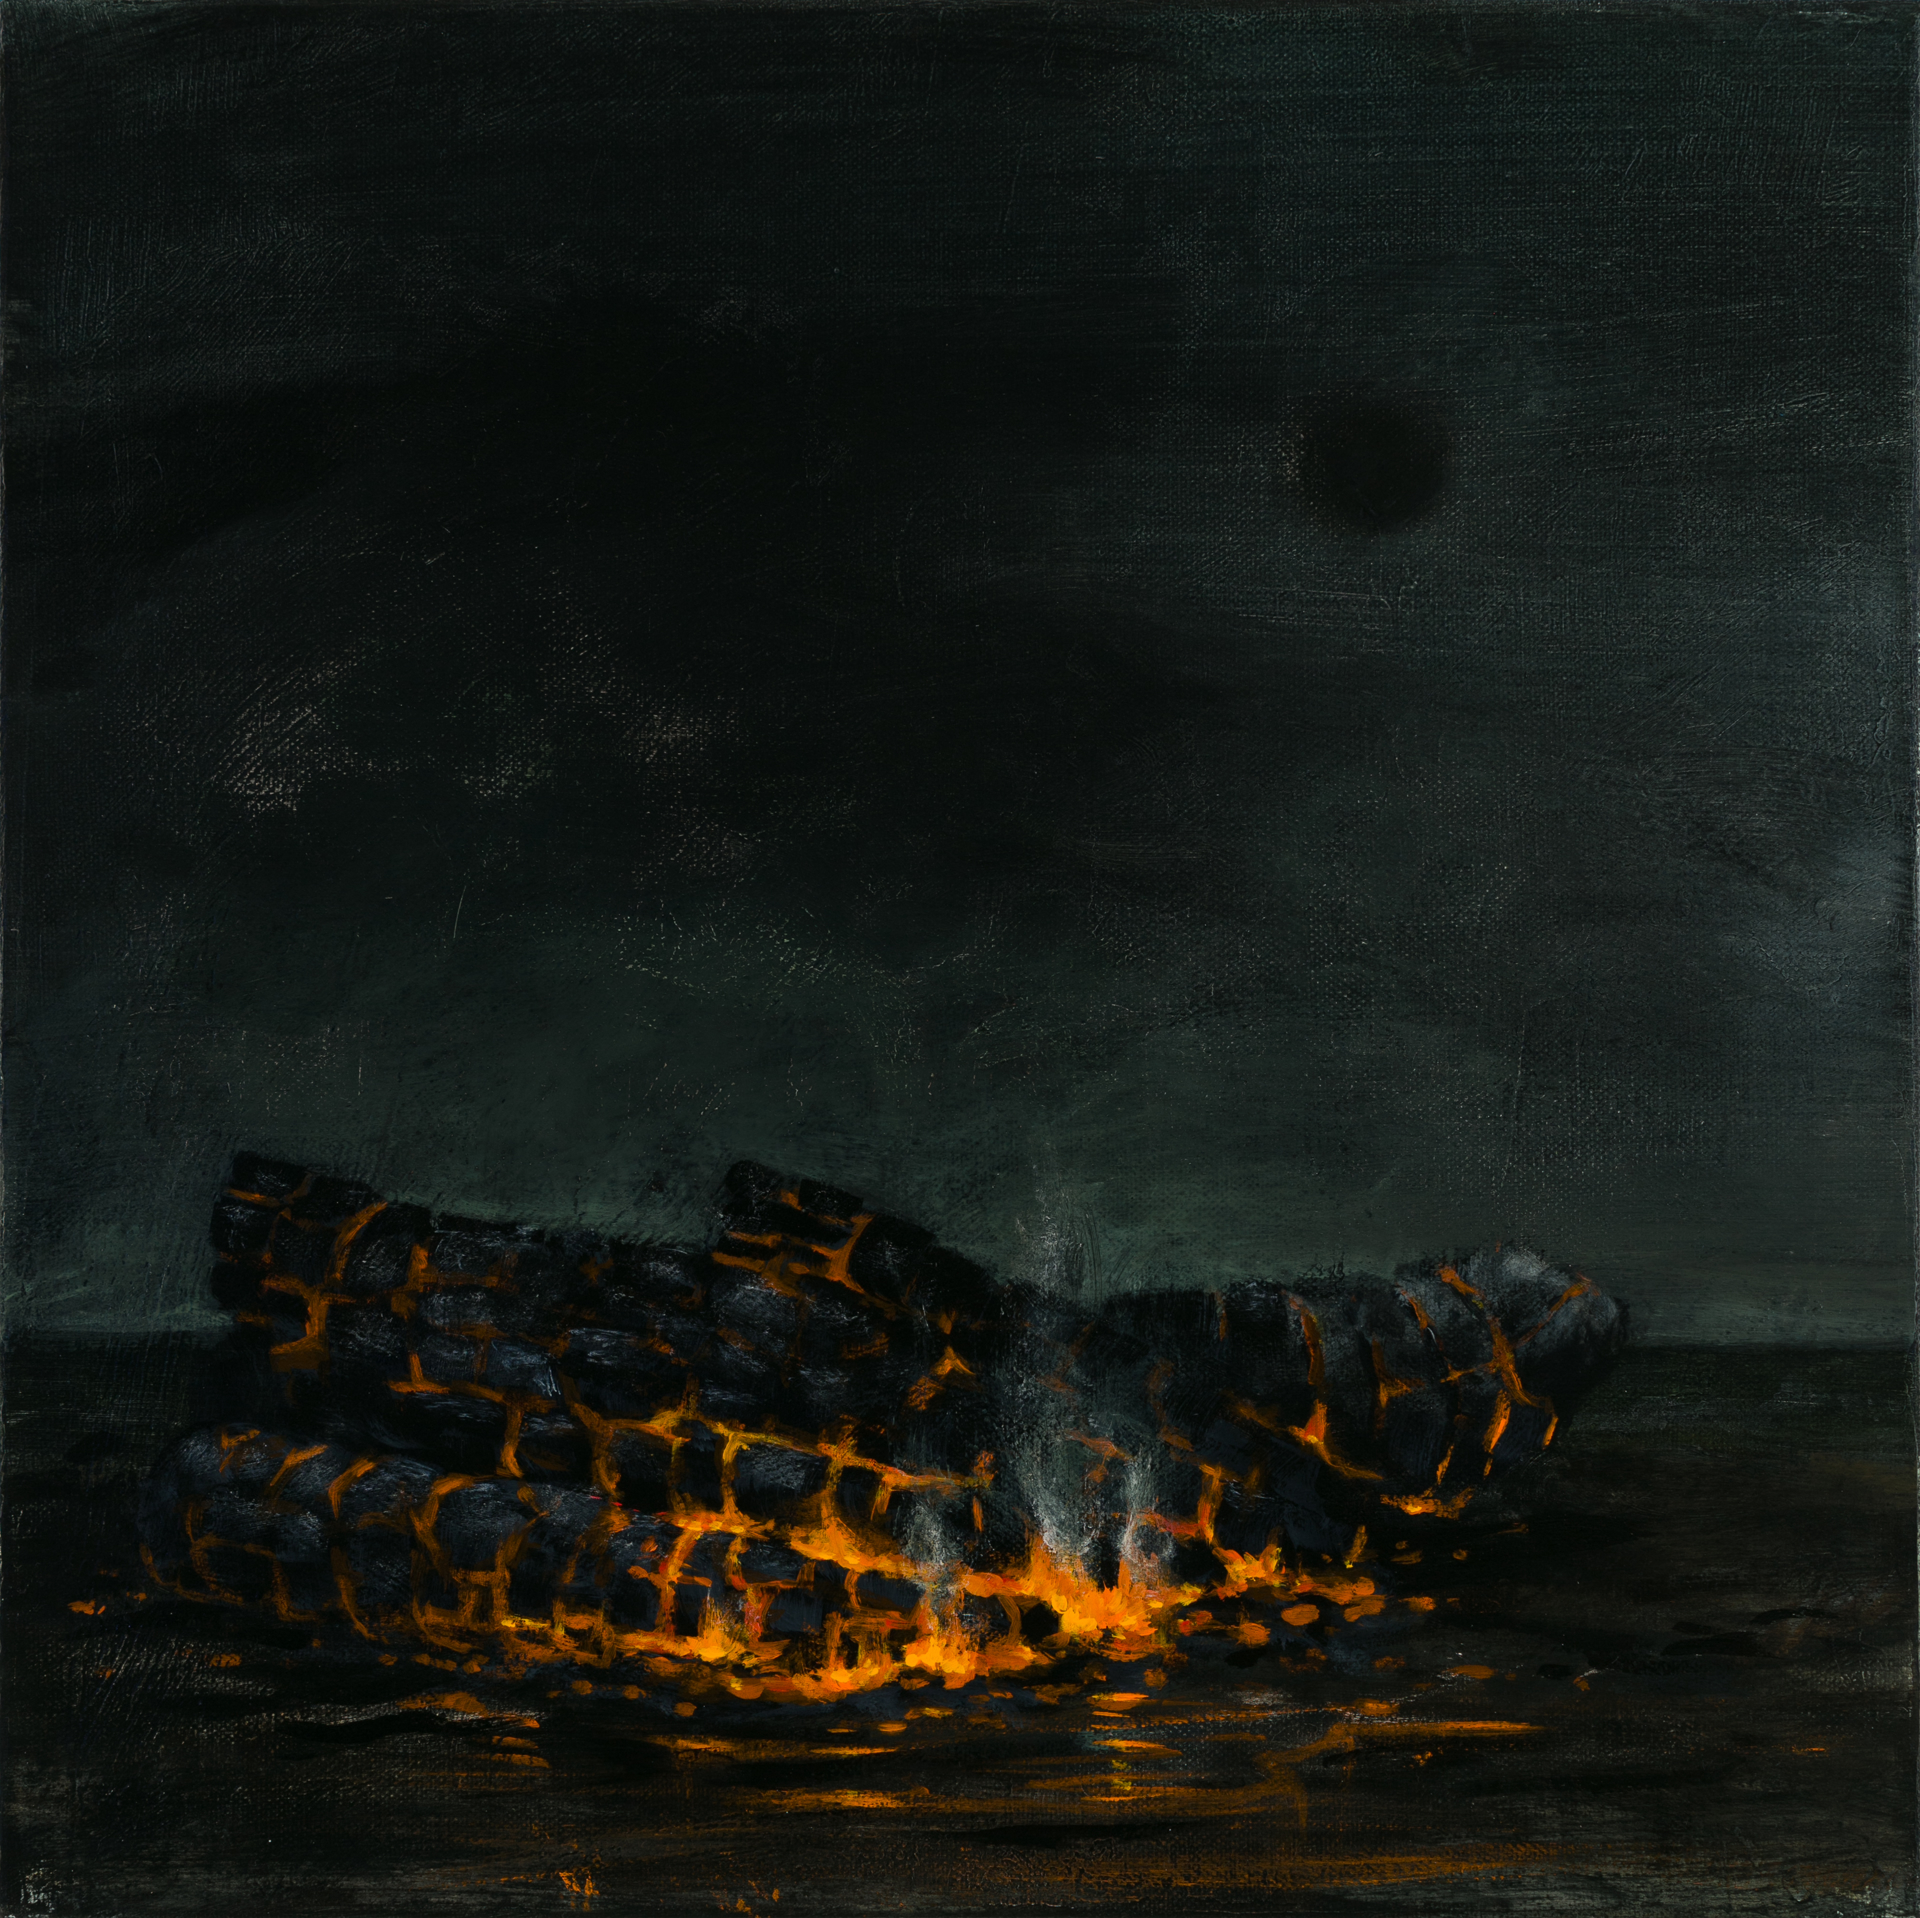 Burnt Offerings by Kevin Sloan